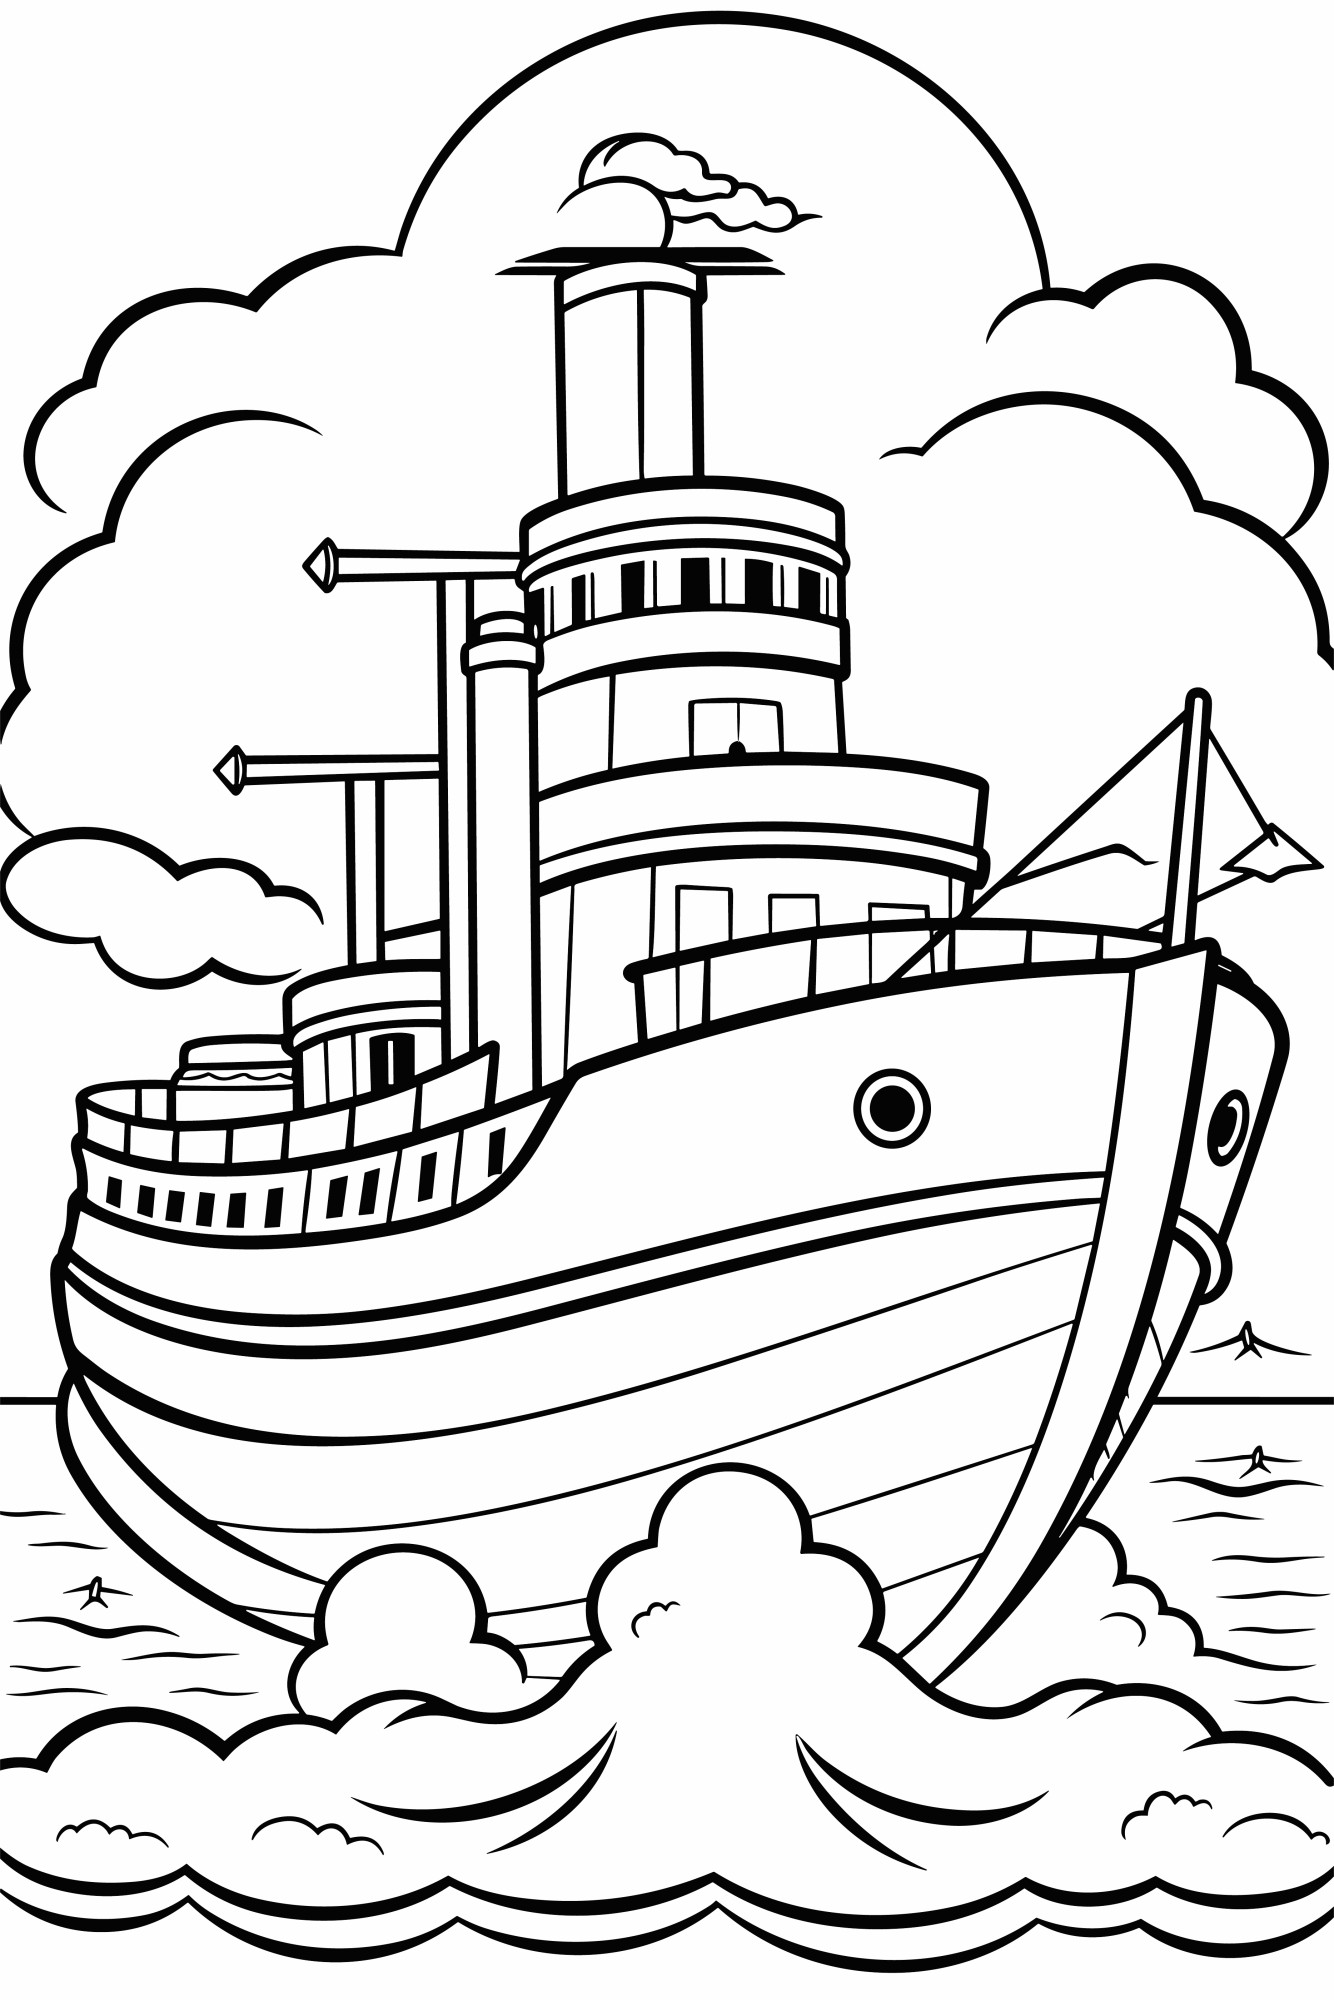 Раскраска для детей: большой корабль теплоход плывет по реке